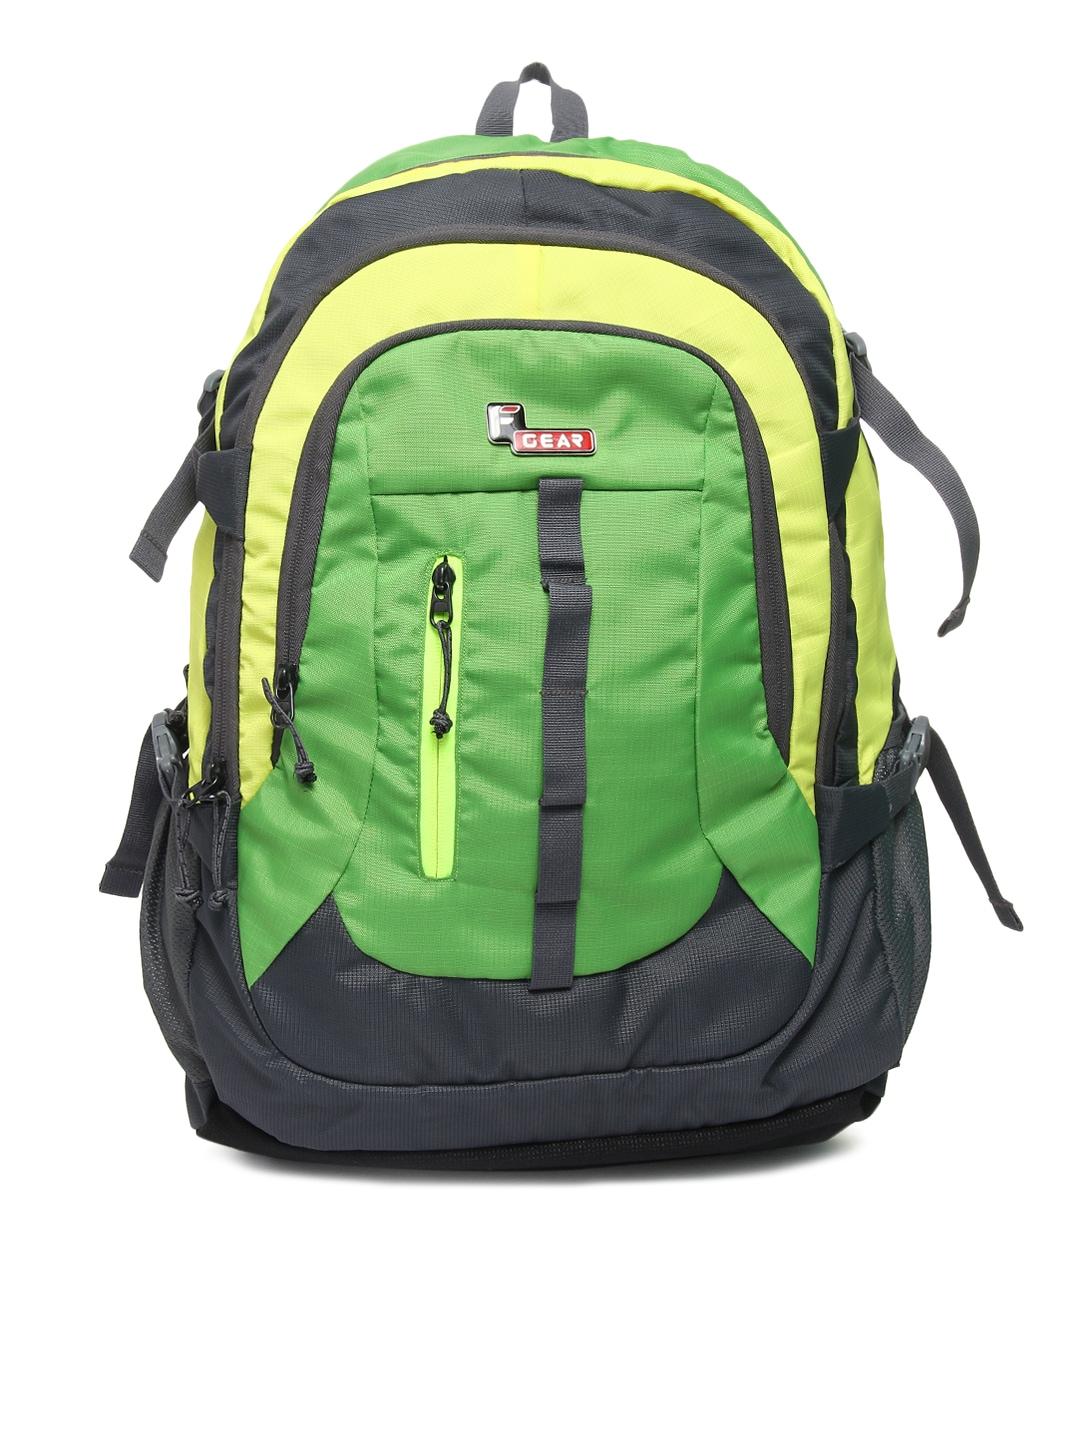 f gear unisex grey & green colourblocked defender v2 backpack